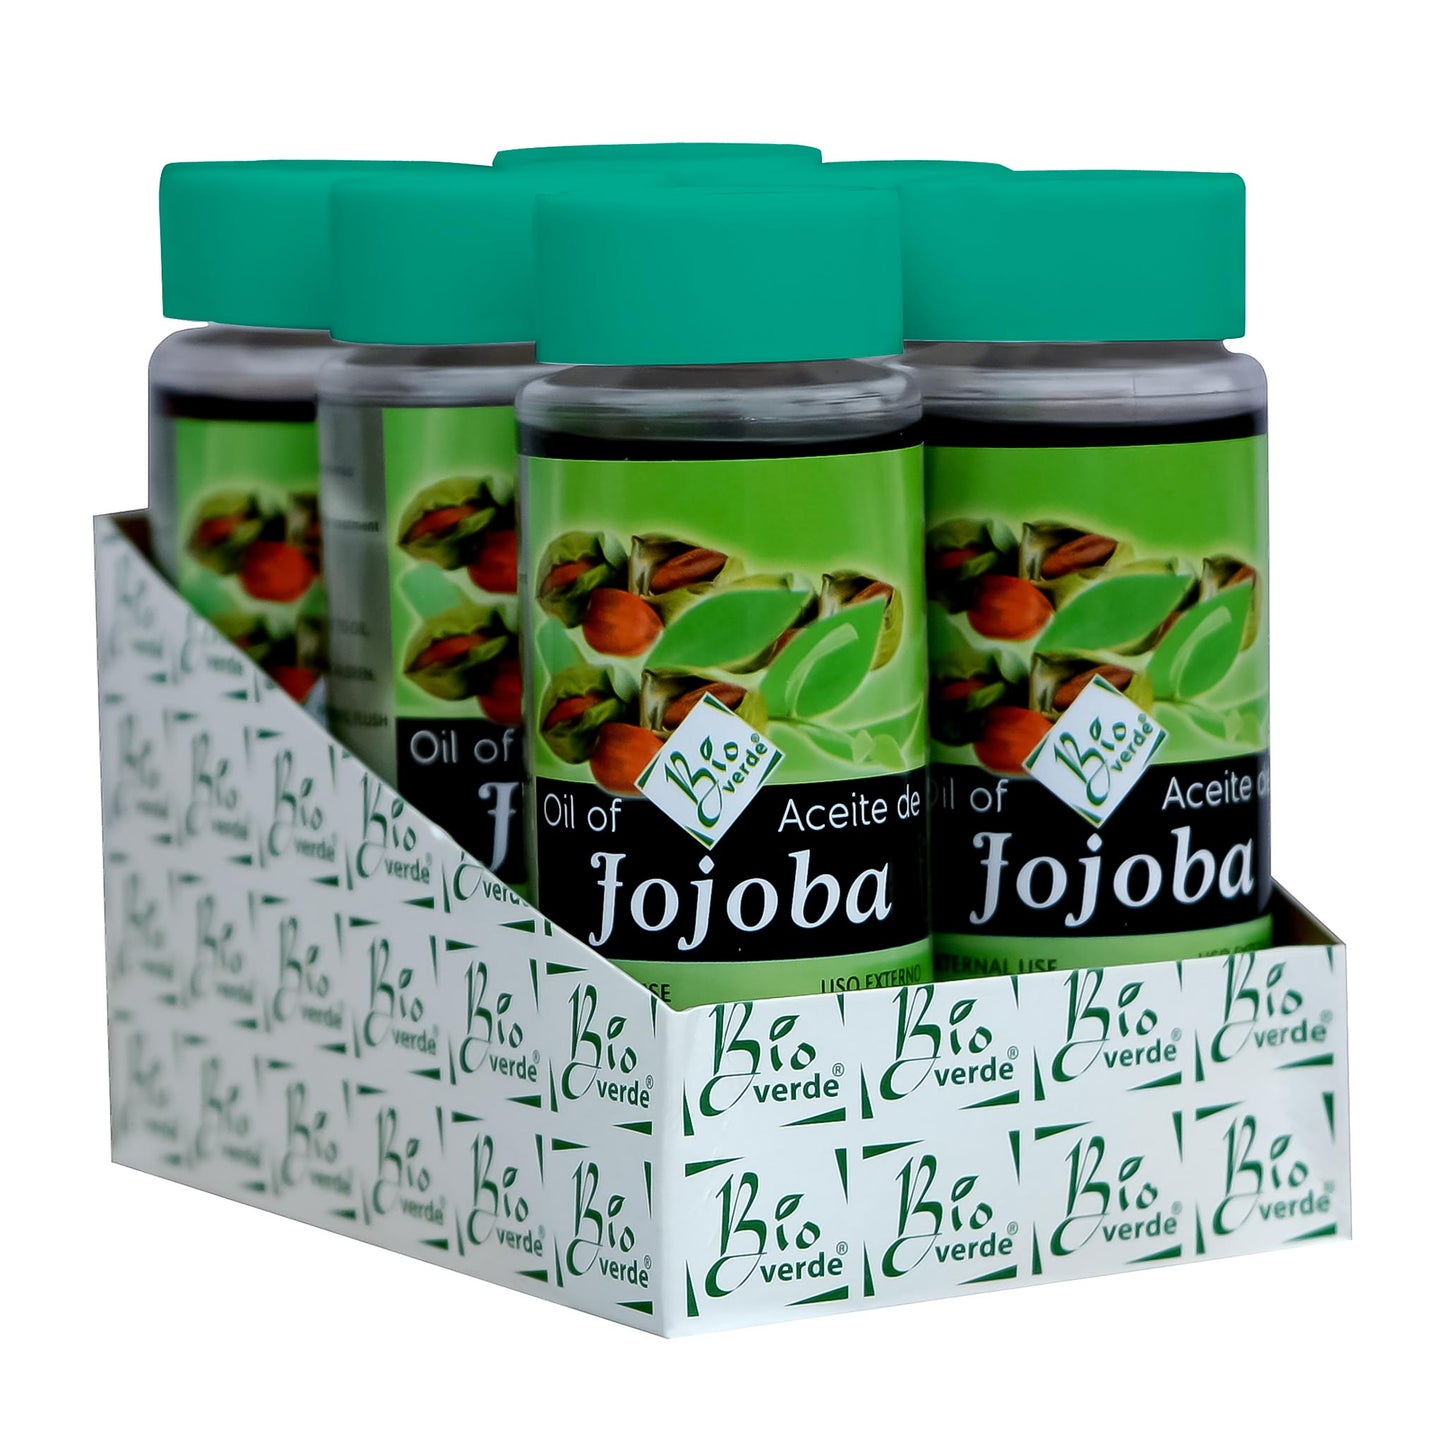 BIOVERDE ® aceite de jojoba 6pz de 120ml